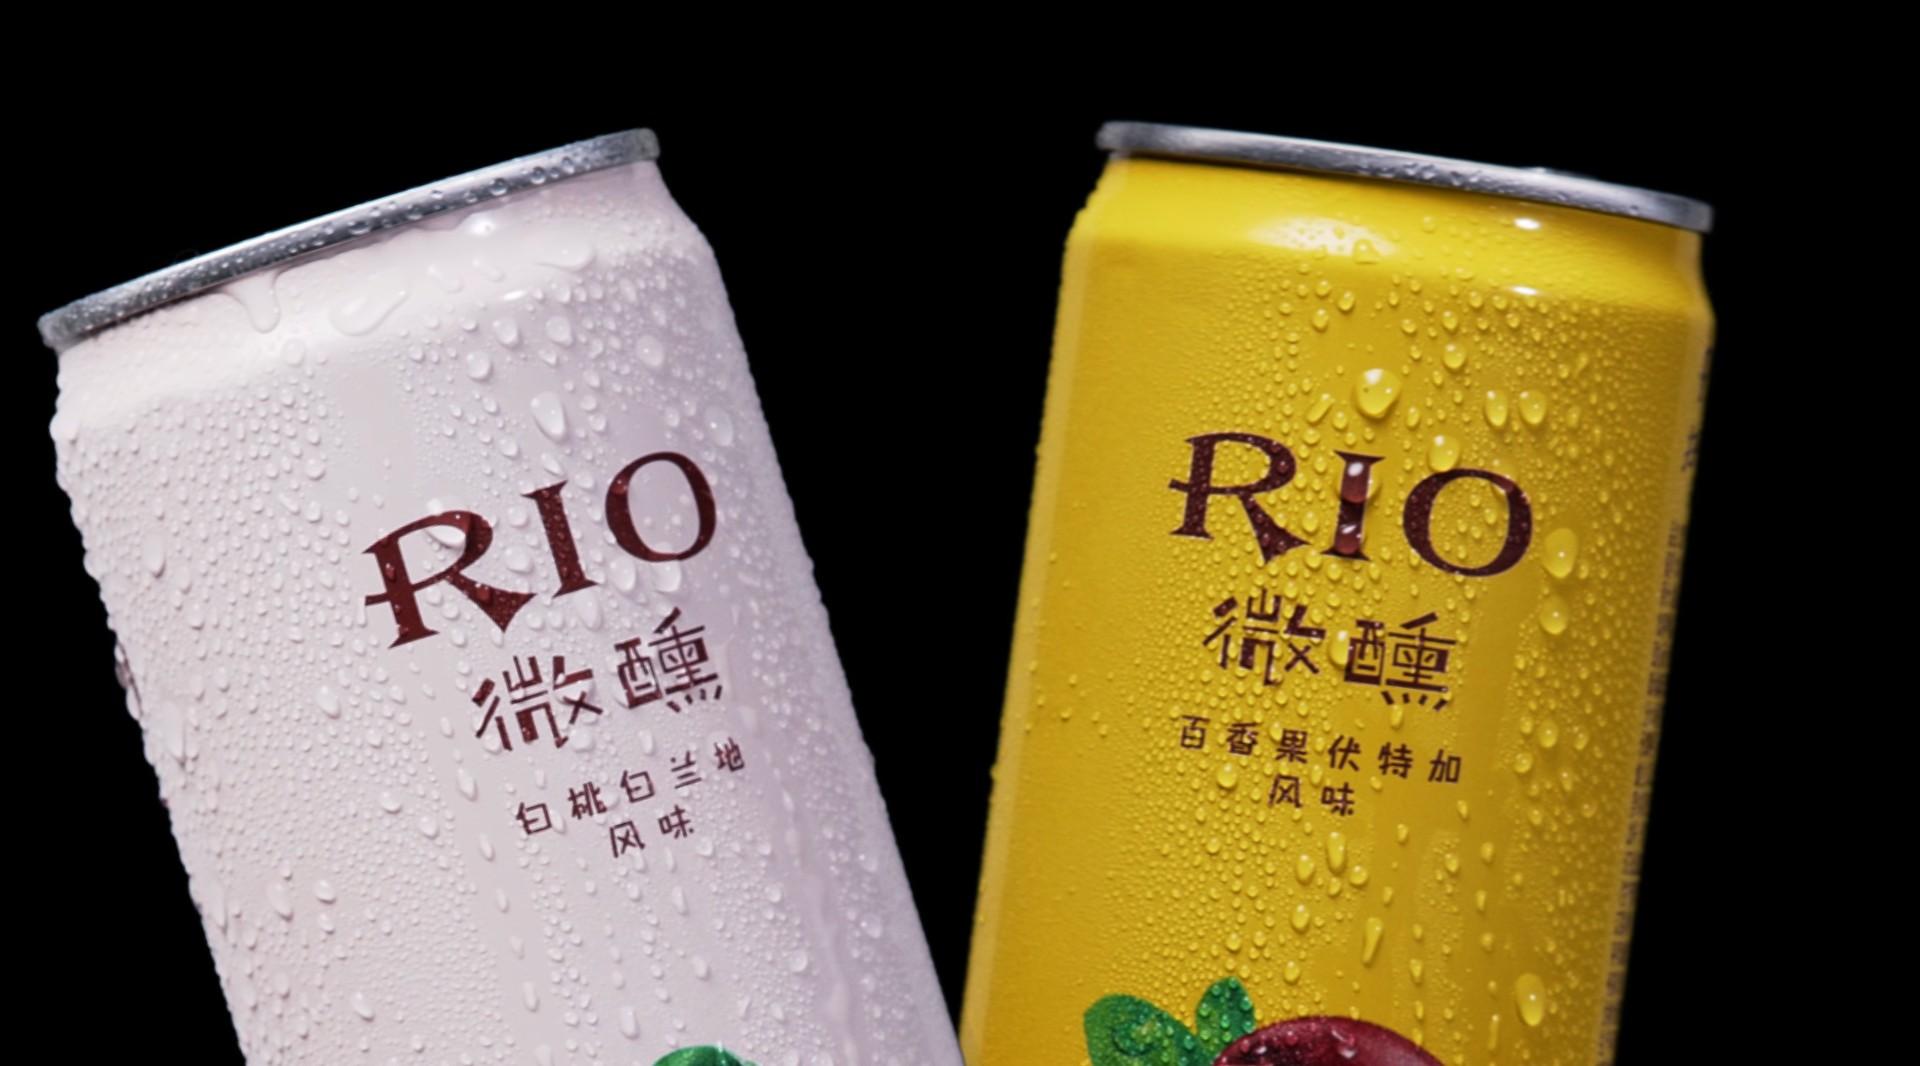 RIO微醺鸡尾酒产品视频